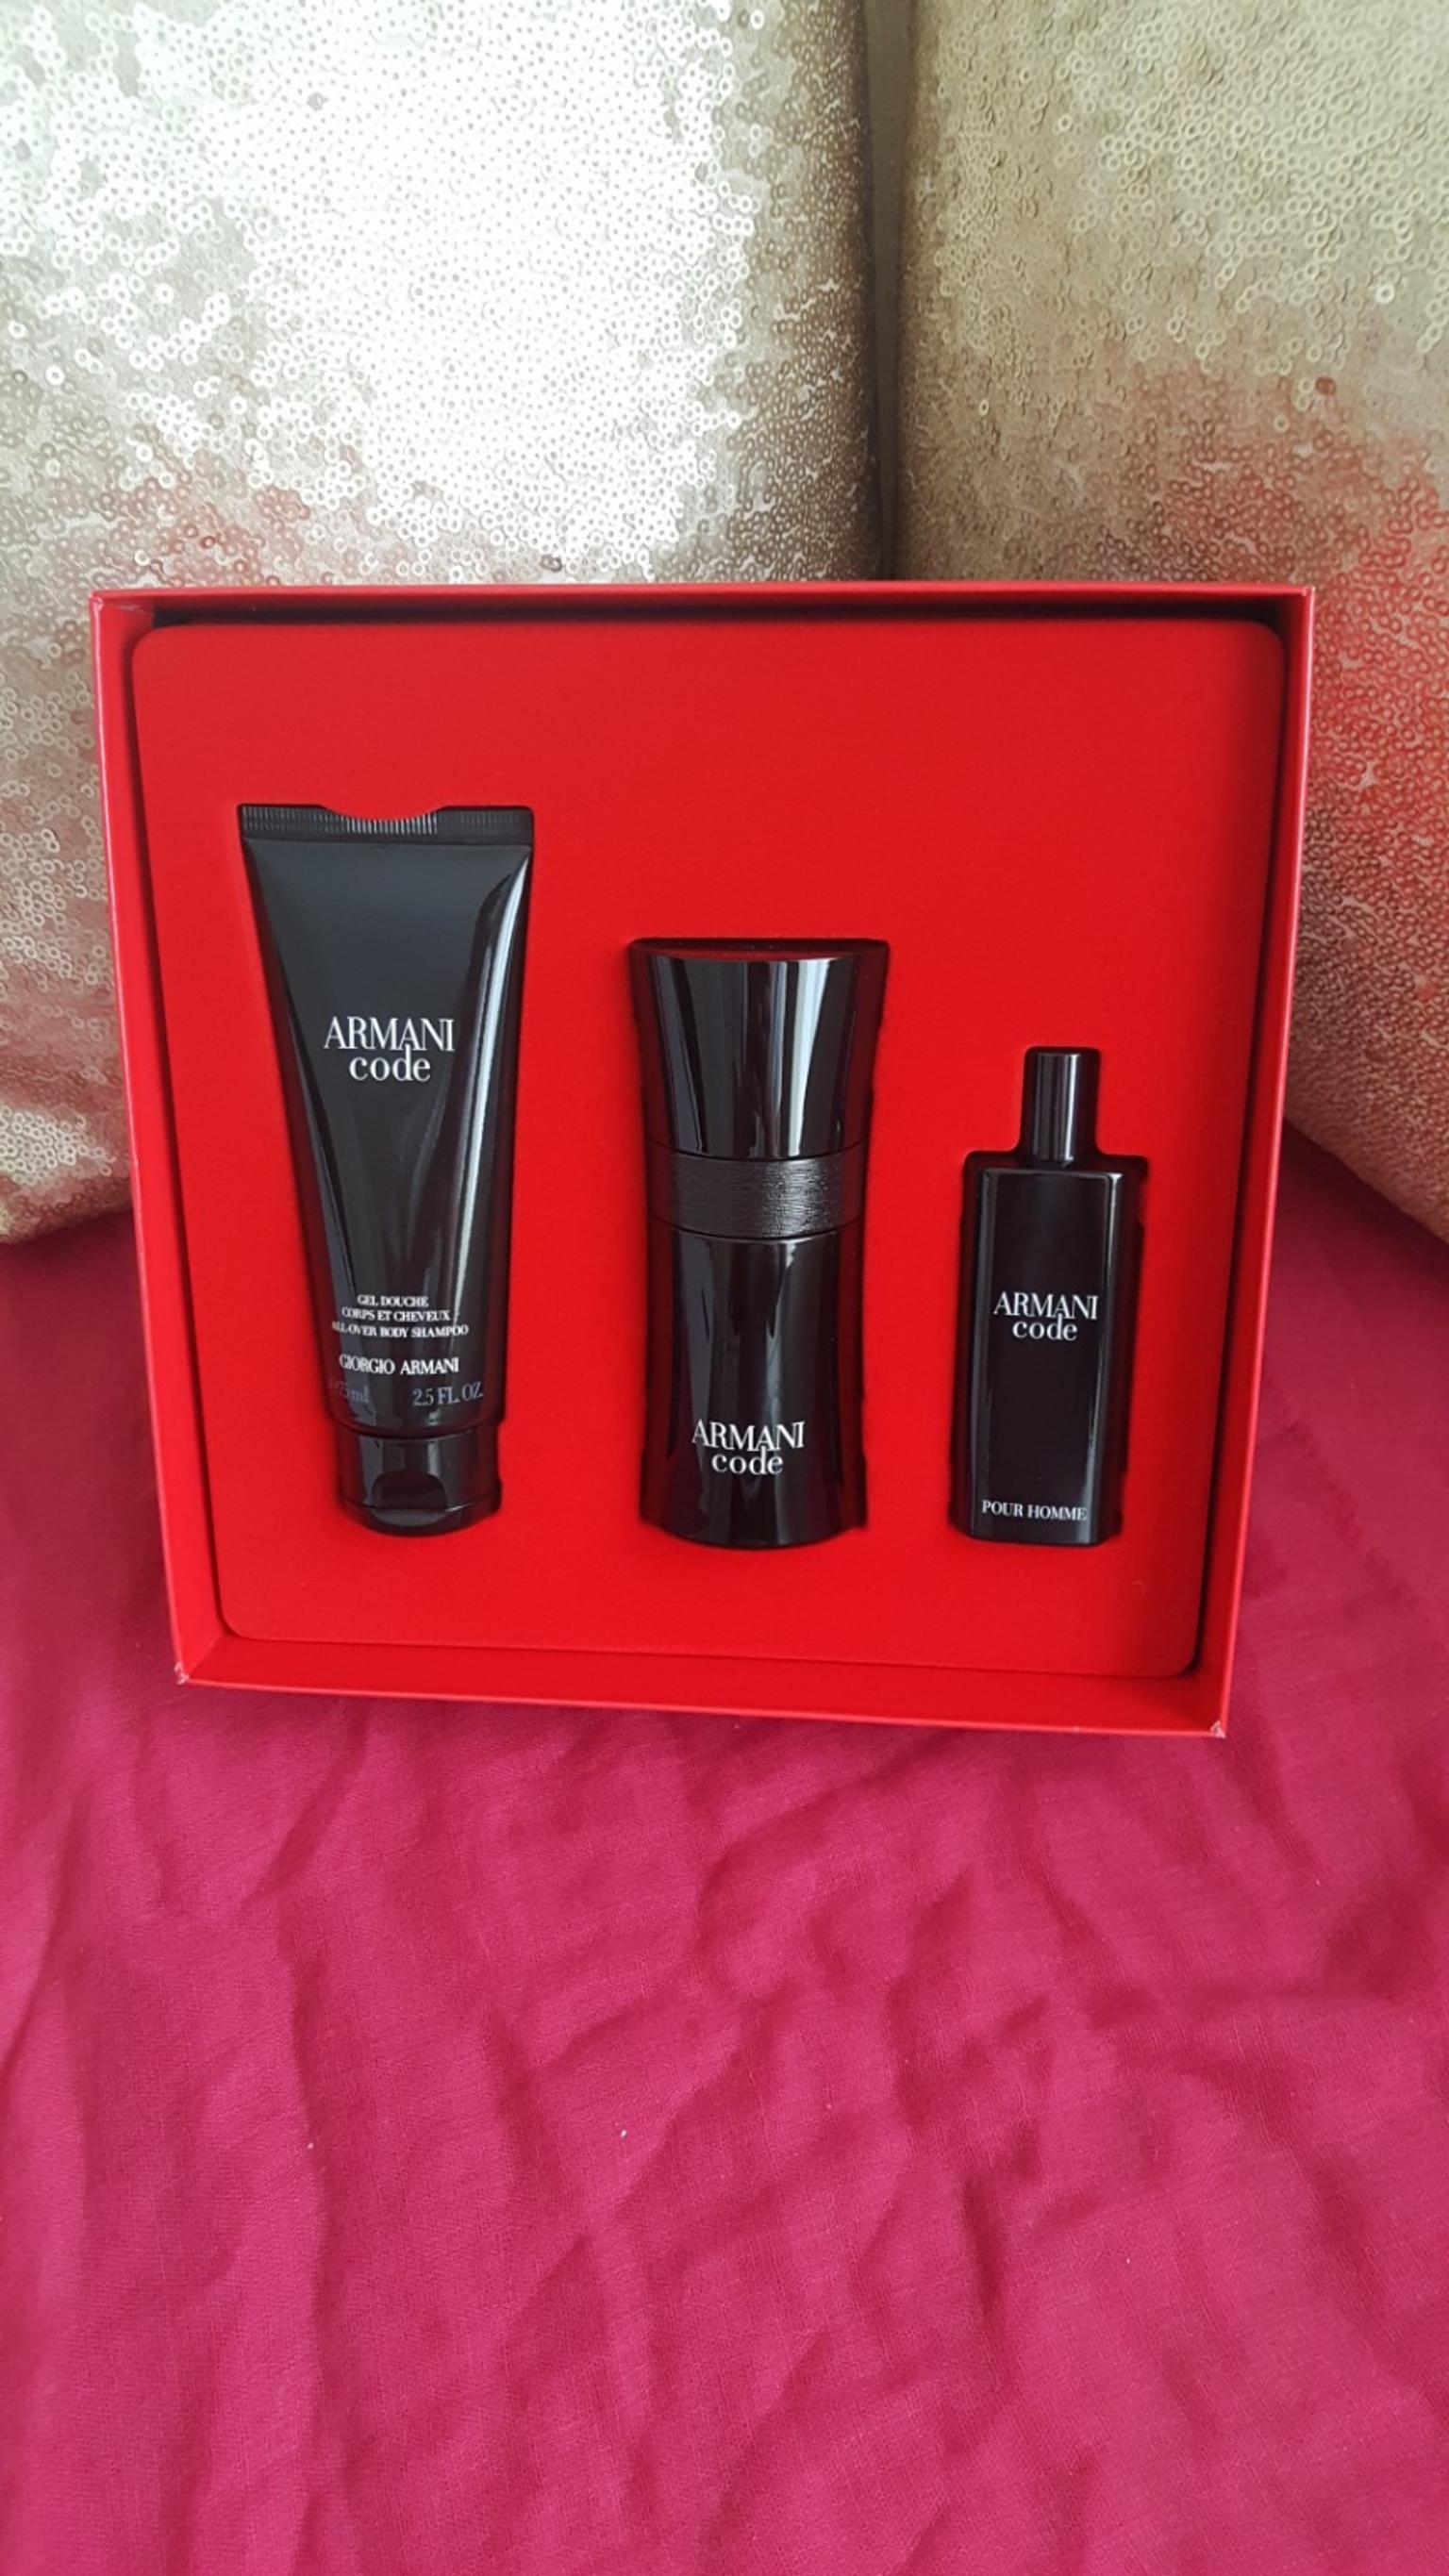 armani perfume gift set for him